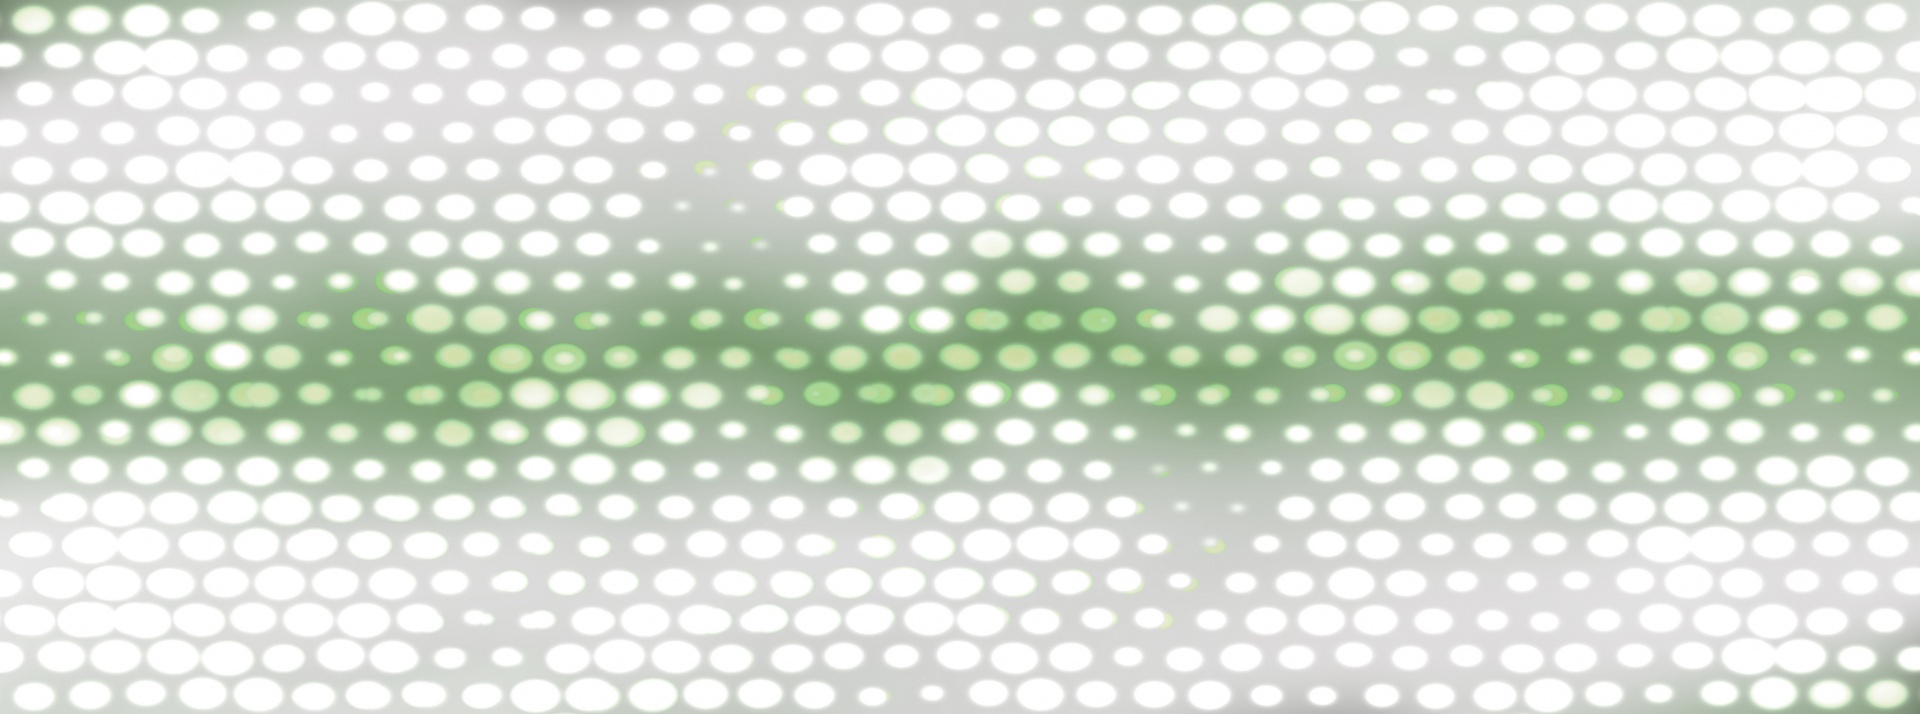 green dots pattern free photo